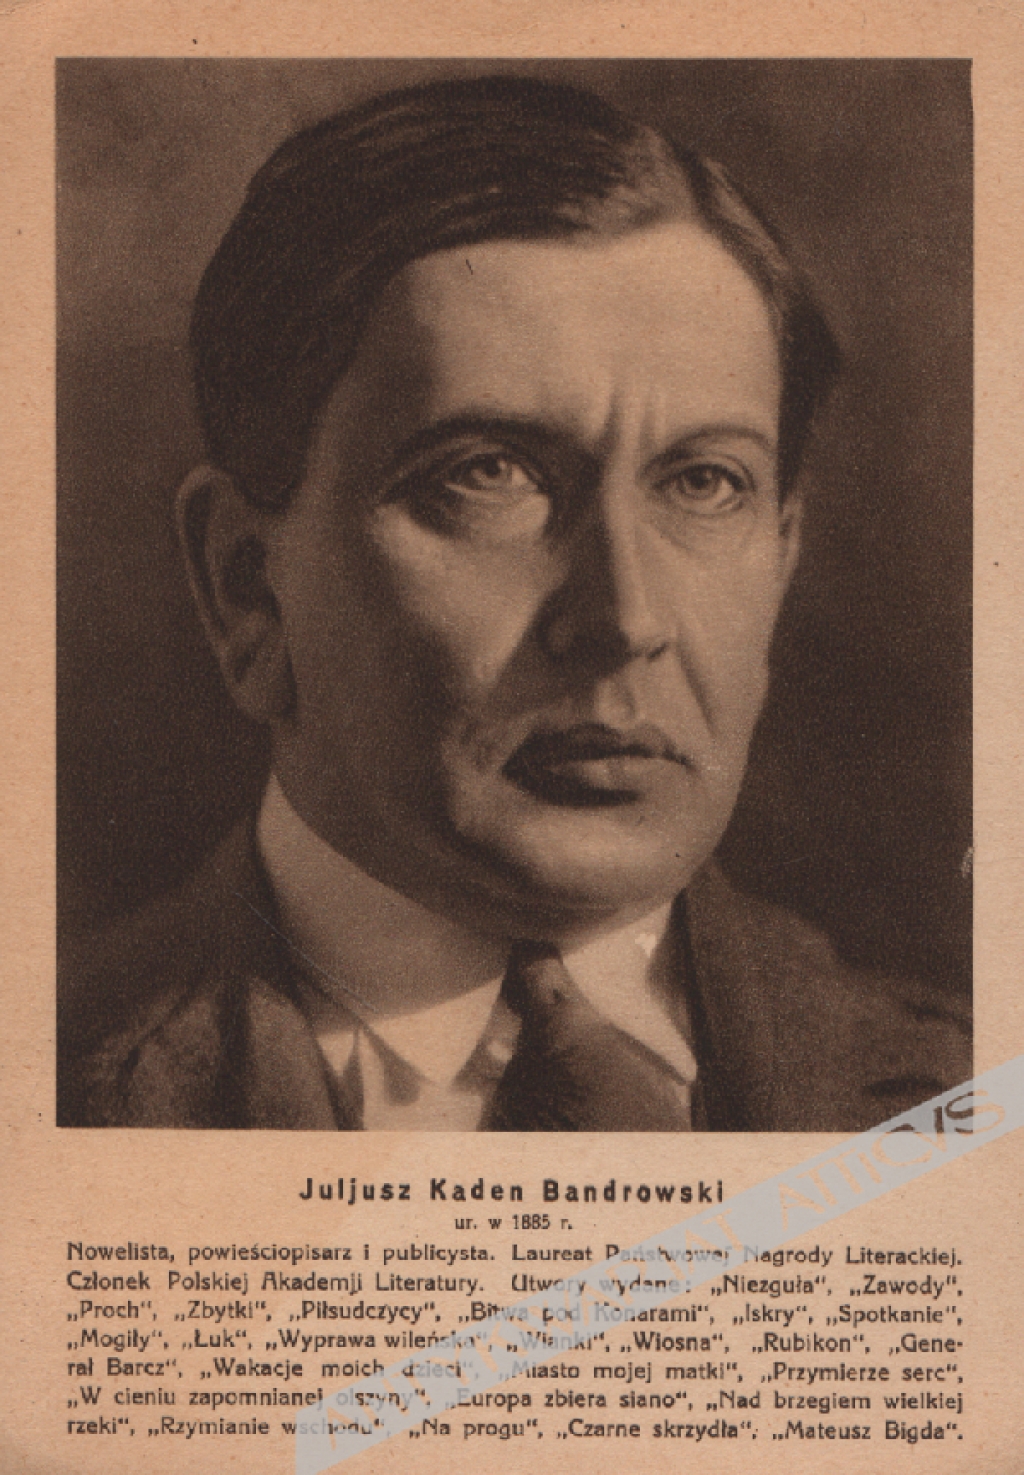 [pocztówka, 1933] Juljusz Kaden Bandrowski